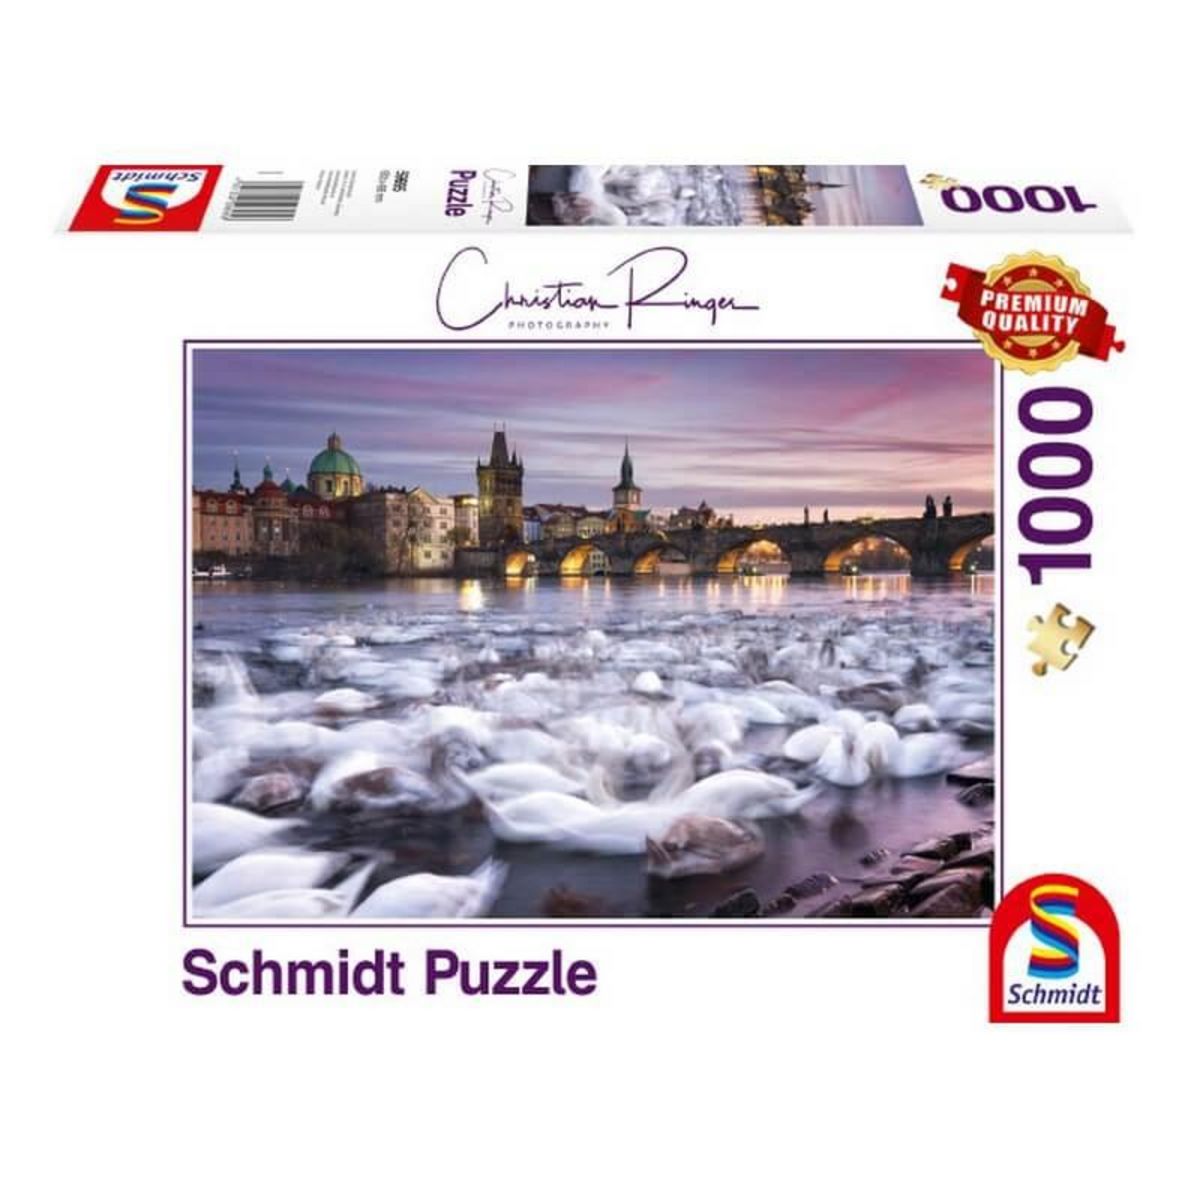 Schmidt Puzzle 1000 pièces : Cygnes de Prague, Christian Ringer